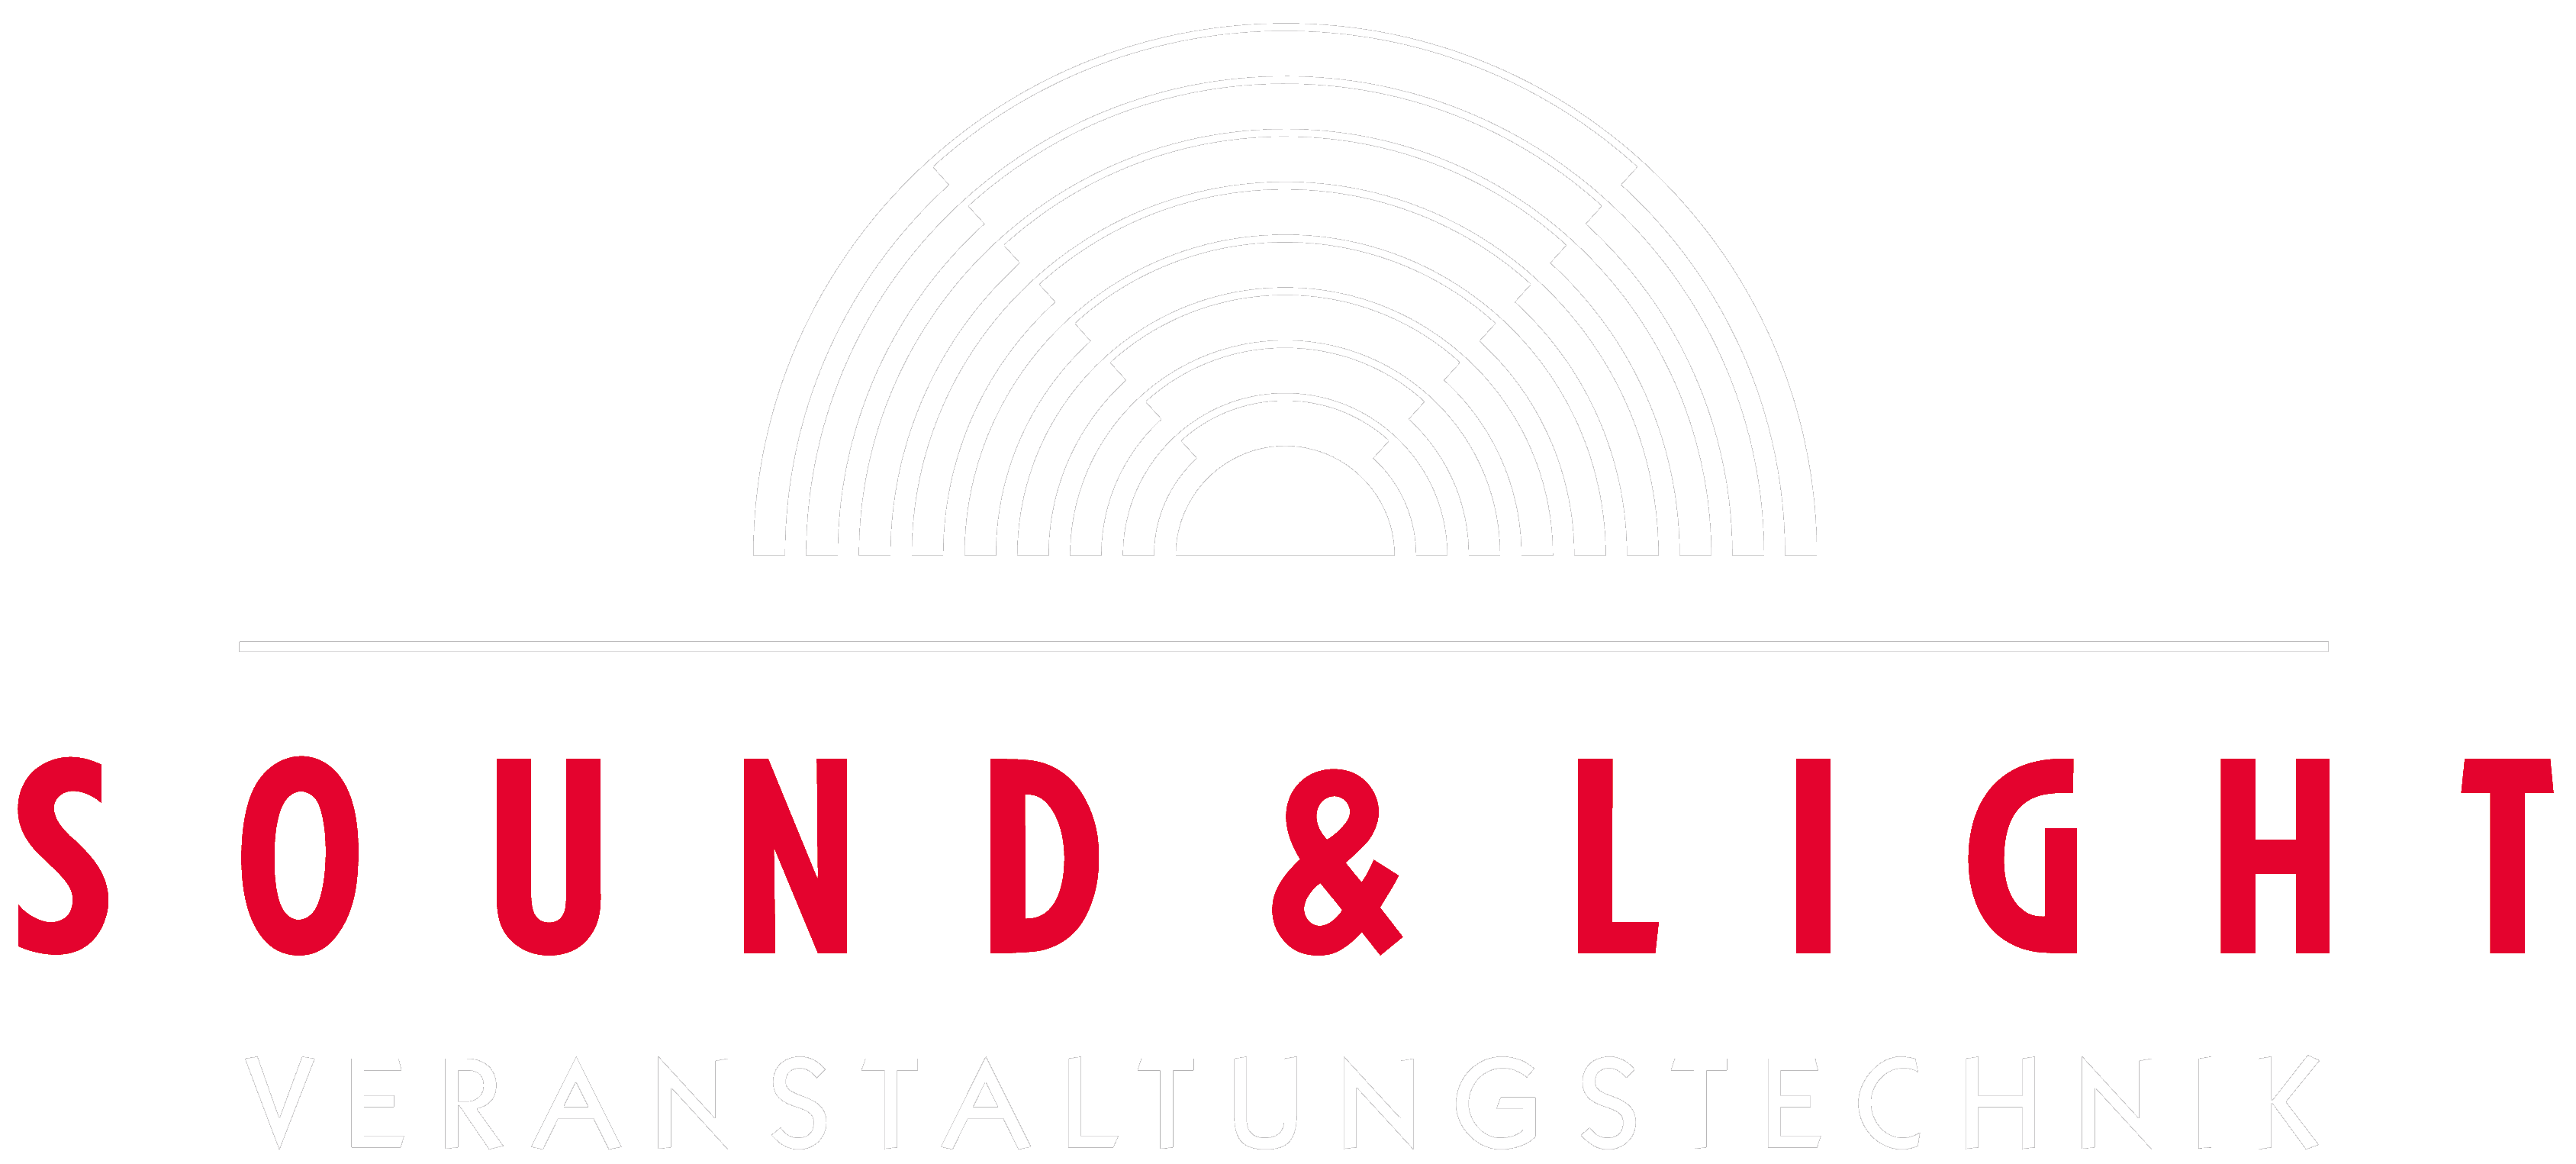 Sound & Light Veranstaltungstechnik GmbH